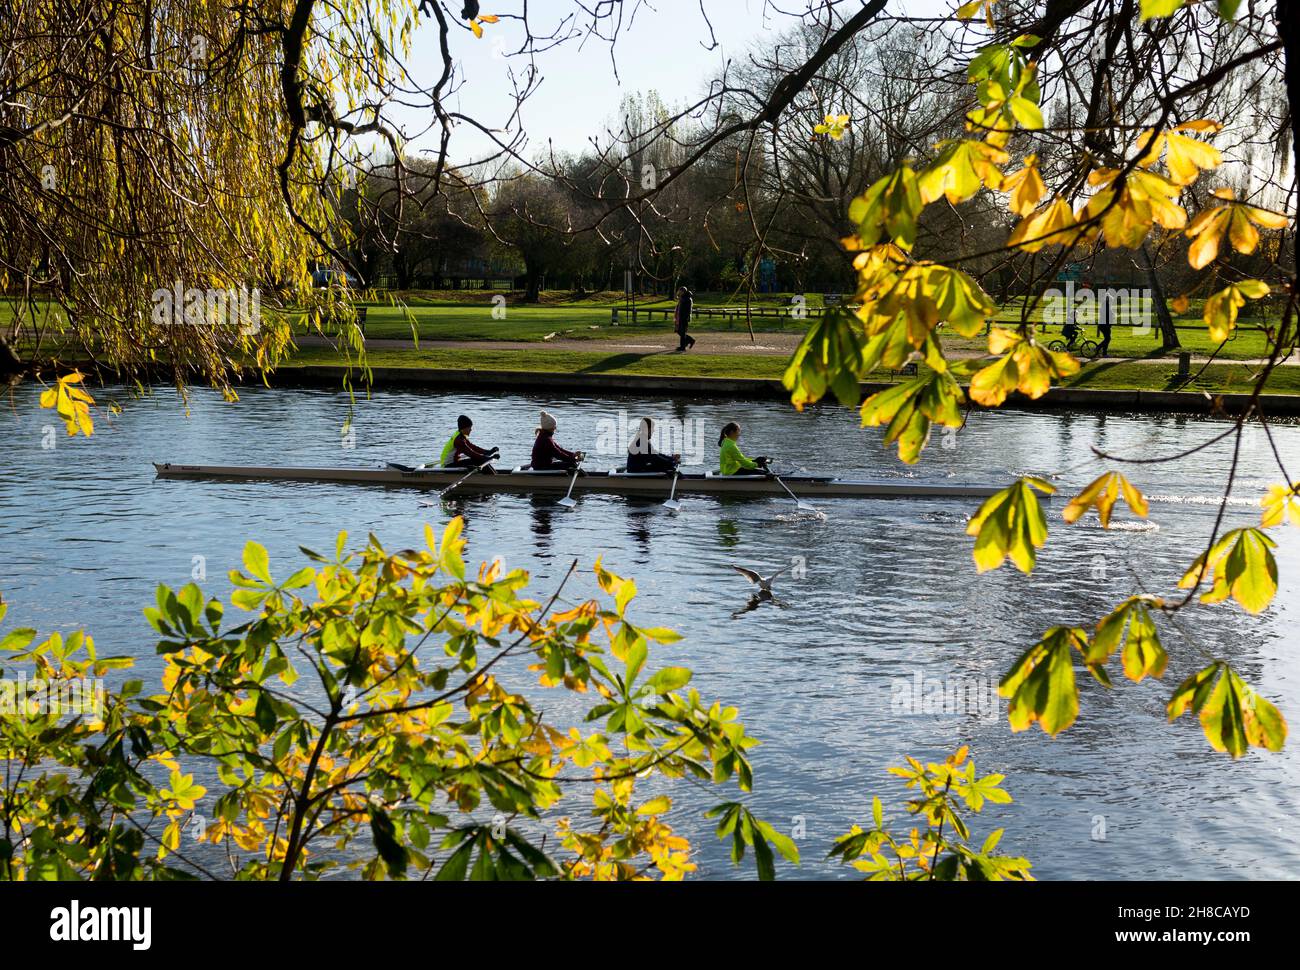 Les femmes rameurs s'entraîner sur la rivière Avon à l'automne, Stratford-upon-Avon, Warwickshire, Angleterre, Royaume-Uni Banque D'Images